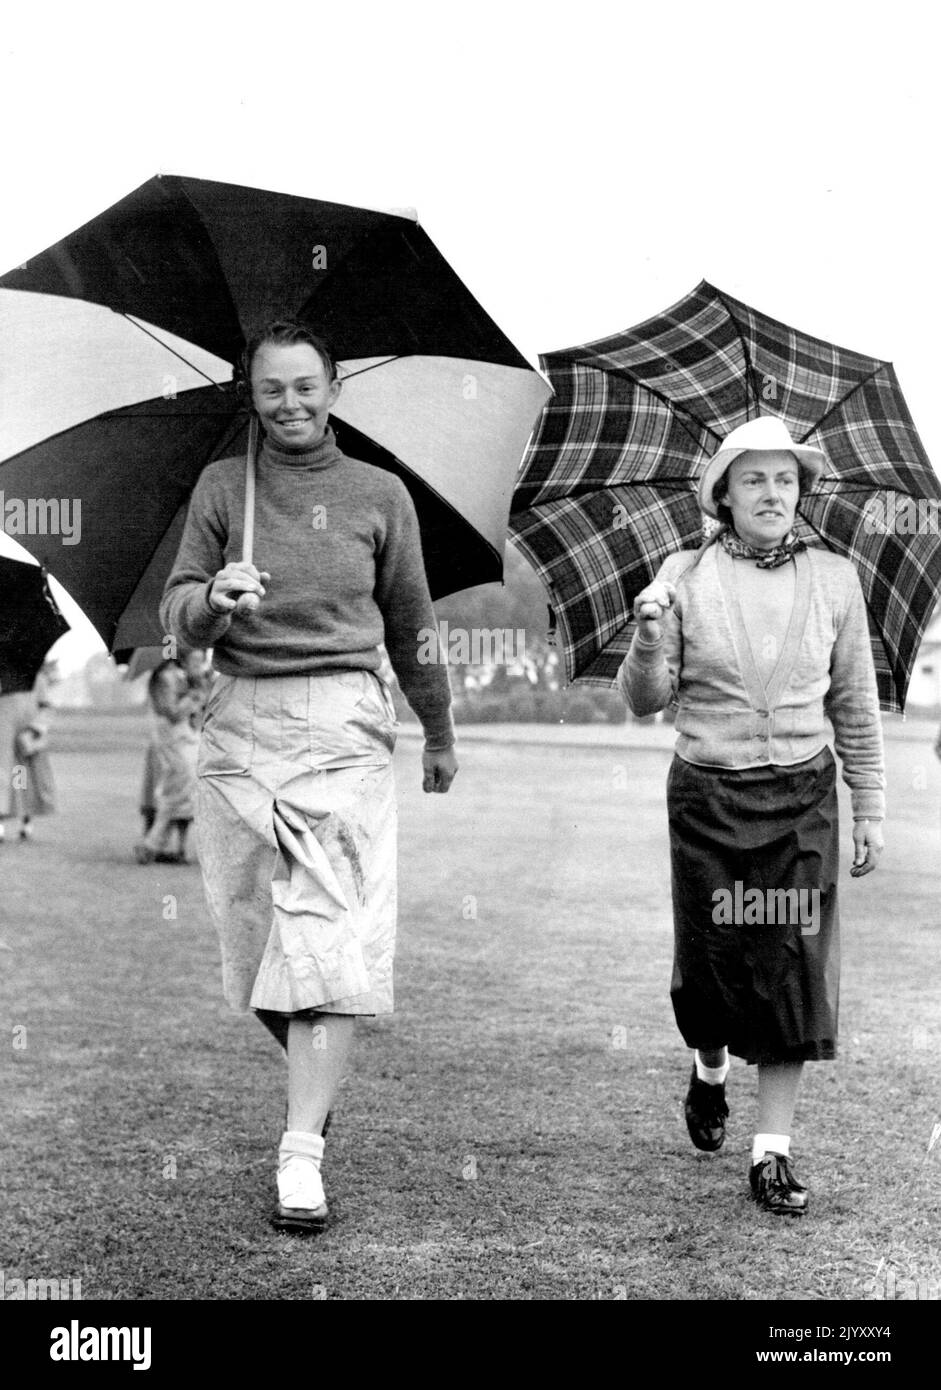 Il tempo umido ha sposato la seconda giornata di gioco nei campionati australiani di golf amatoriali Jubilee di Kooyonga di giovedì. Qui Miss J. Percy (Q), a sinistra, e Miss B. Kernot (Vic.) a piedi per il 17th verde. Entrambi erano negli anni '16 per qualificarsi, e il 77 di Miss Percy è stato il miglior round della giornata. Settembre 1, 1951. Foto Stock